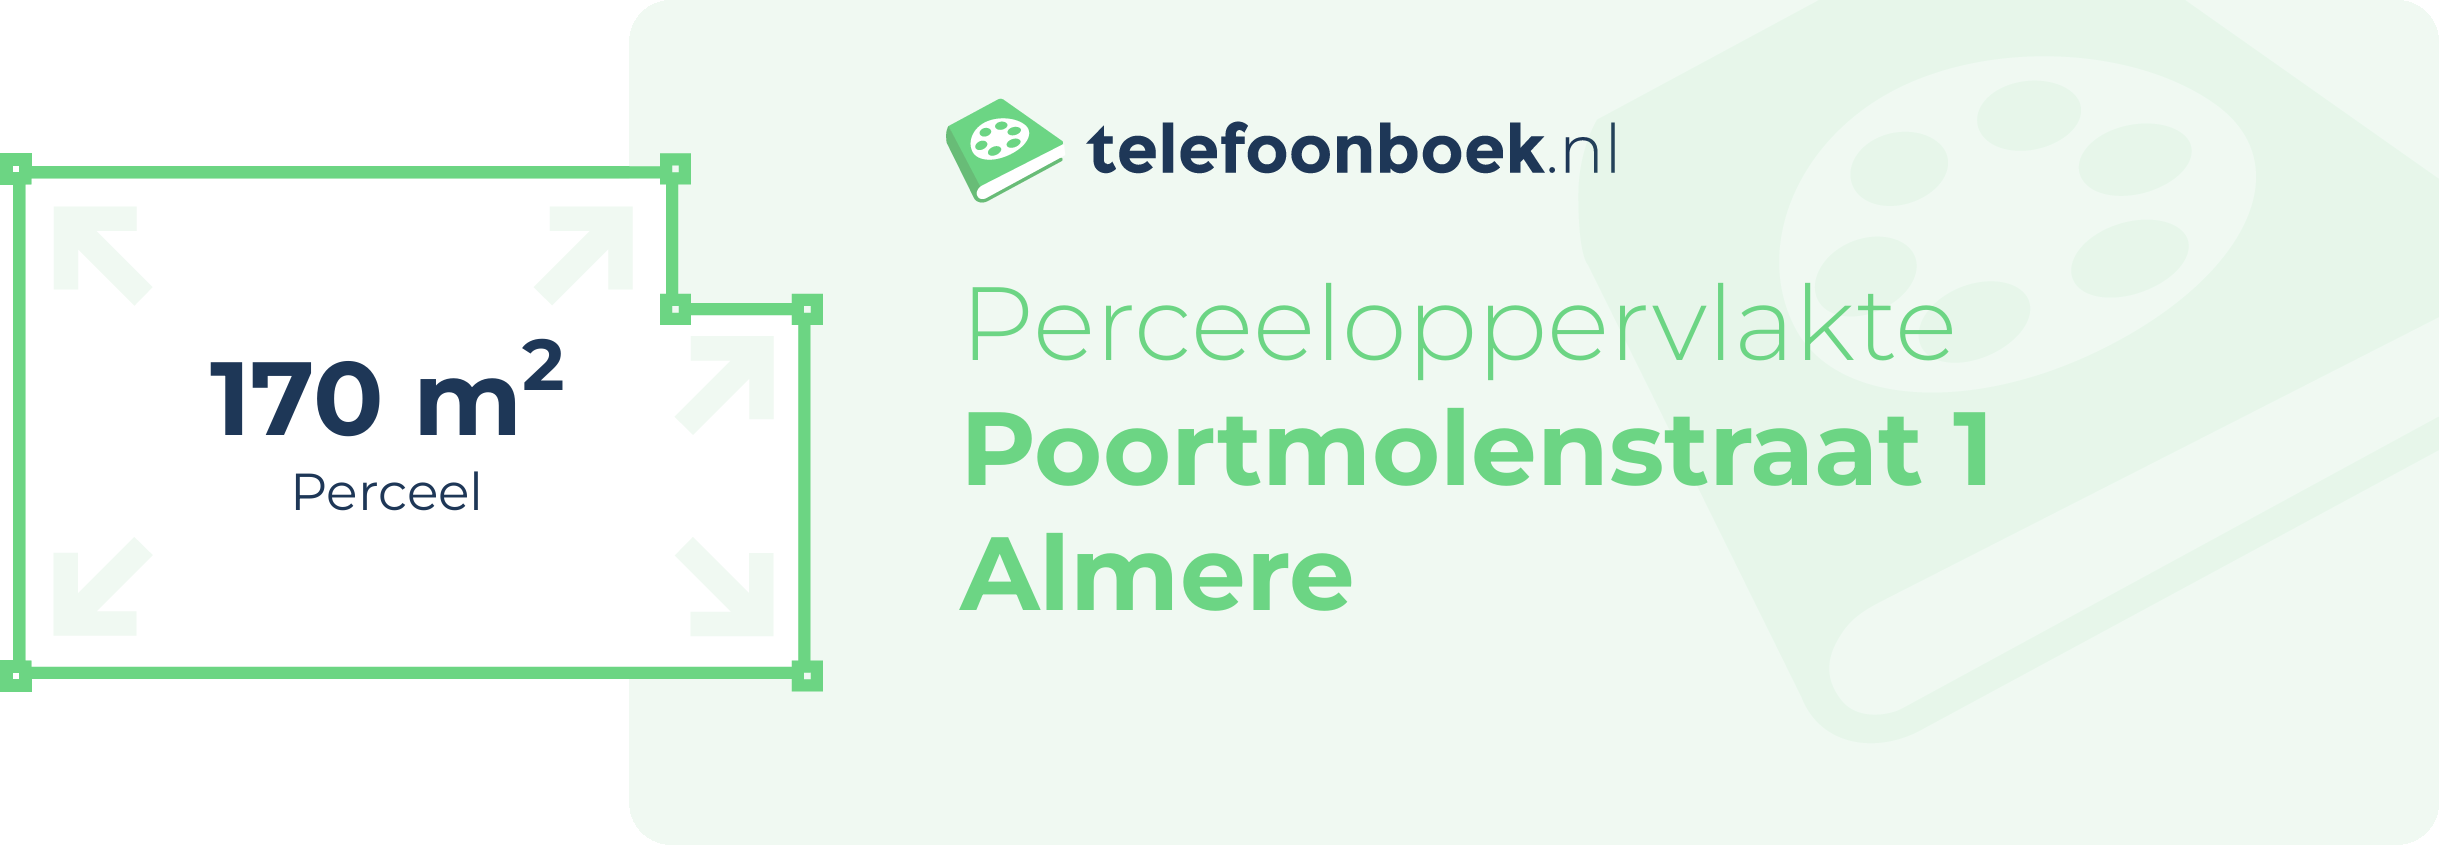 Perceeloppervlakte Poortmolenstraat 1 Almere